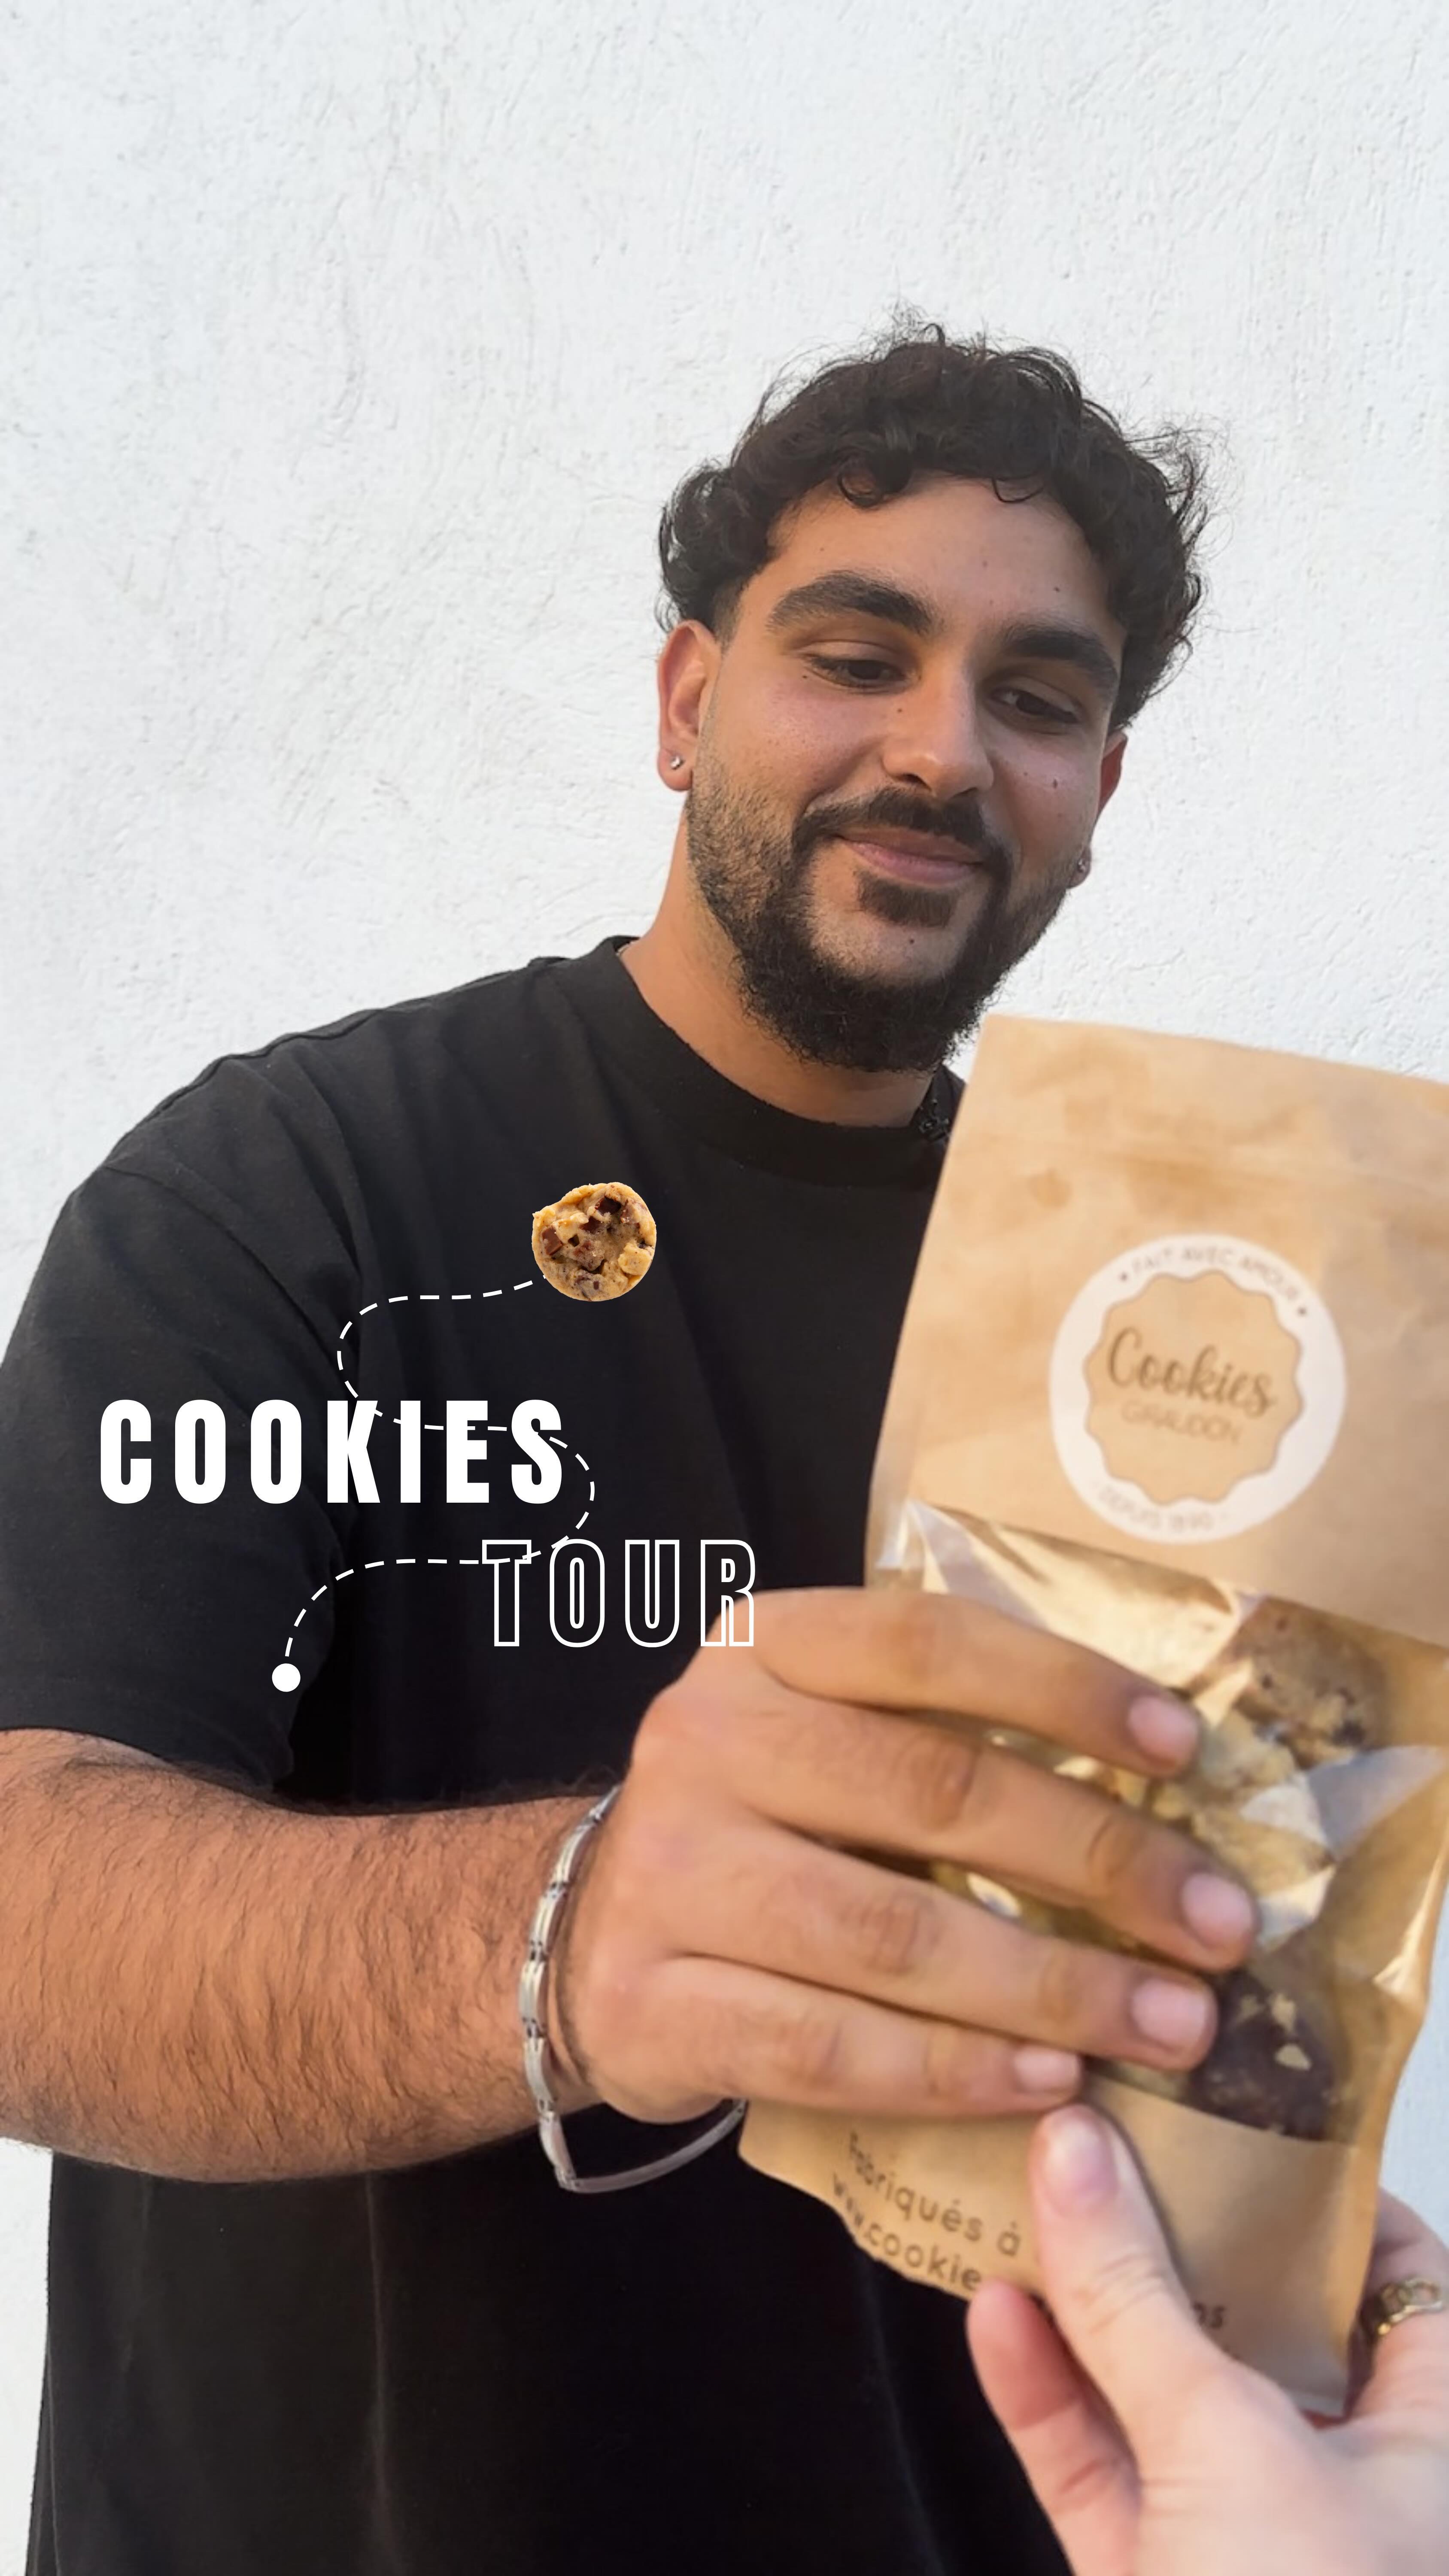 COOKIES TOUR 🍪

Et vous, quel cookie vous fait fondre de plaisir ? 
Dites-nous votre Cookie  Giraudon préféré en commentaire ! 

🍪 Faits maison à Gémenos (13)
📍Disponibles dans plusieurs points de vente
💌 Plus d’infos sur notre site web (lien dans notre bio)

#CookiesGiraudon #gourmand  #marseille #CookiesFaitsMaison  #homemadewithlove #CookiesArtisanaux #FaitAvecAmour #Gémenos #RecetteAuthentique #CuisineArtisanale #marseille #MadeInFrance #cookiesaddict